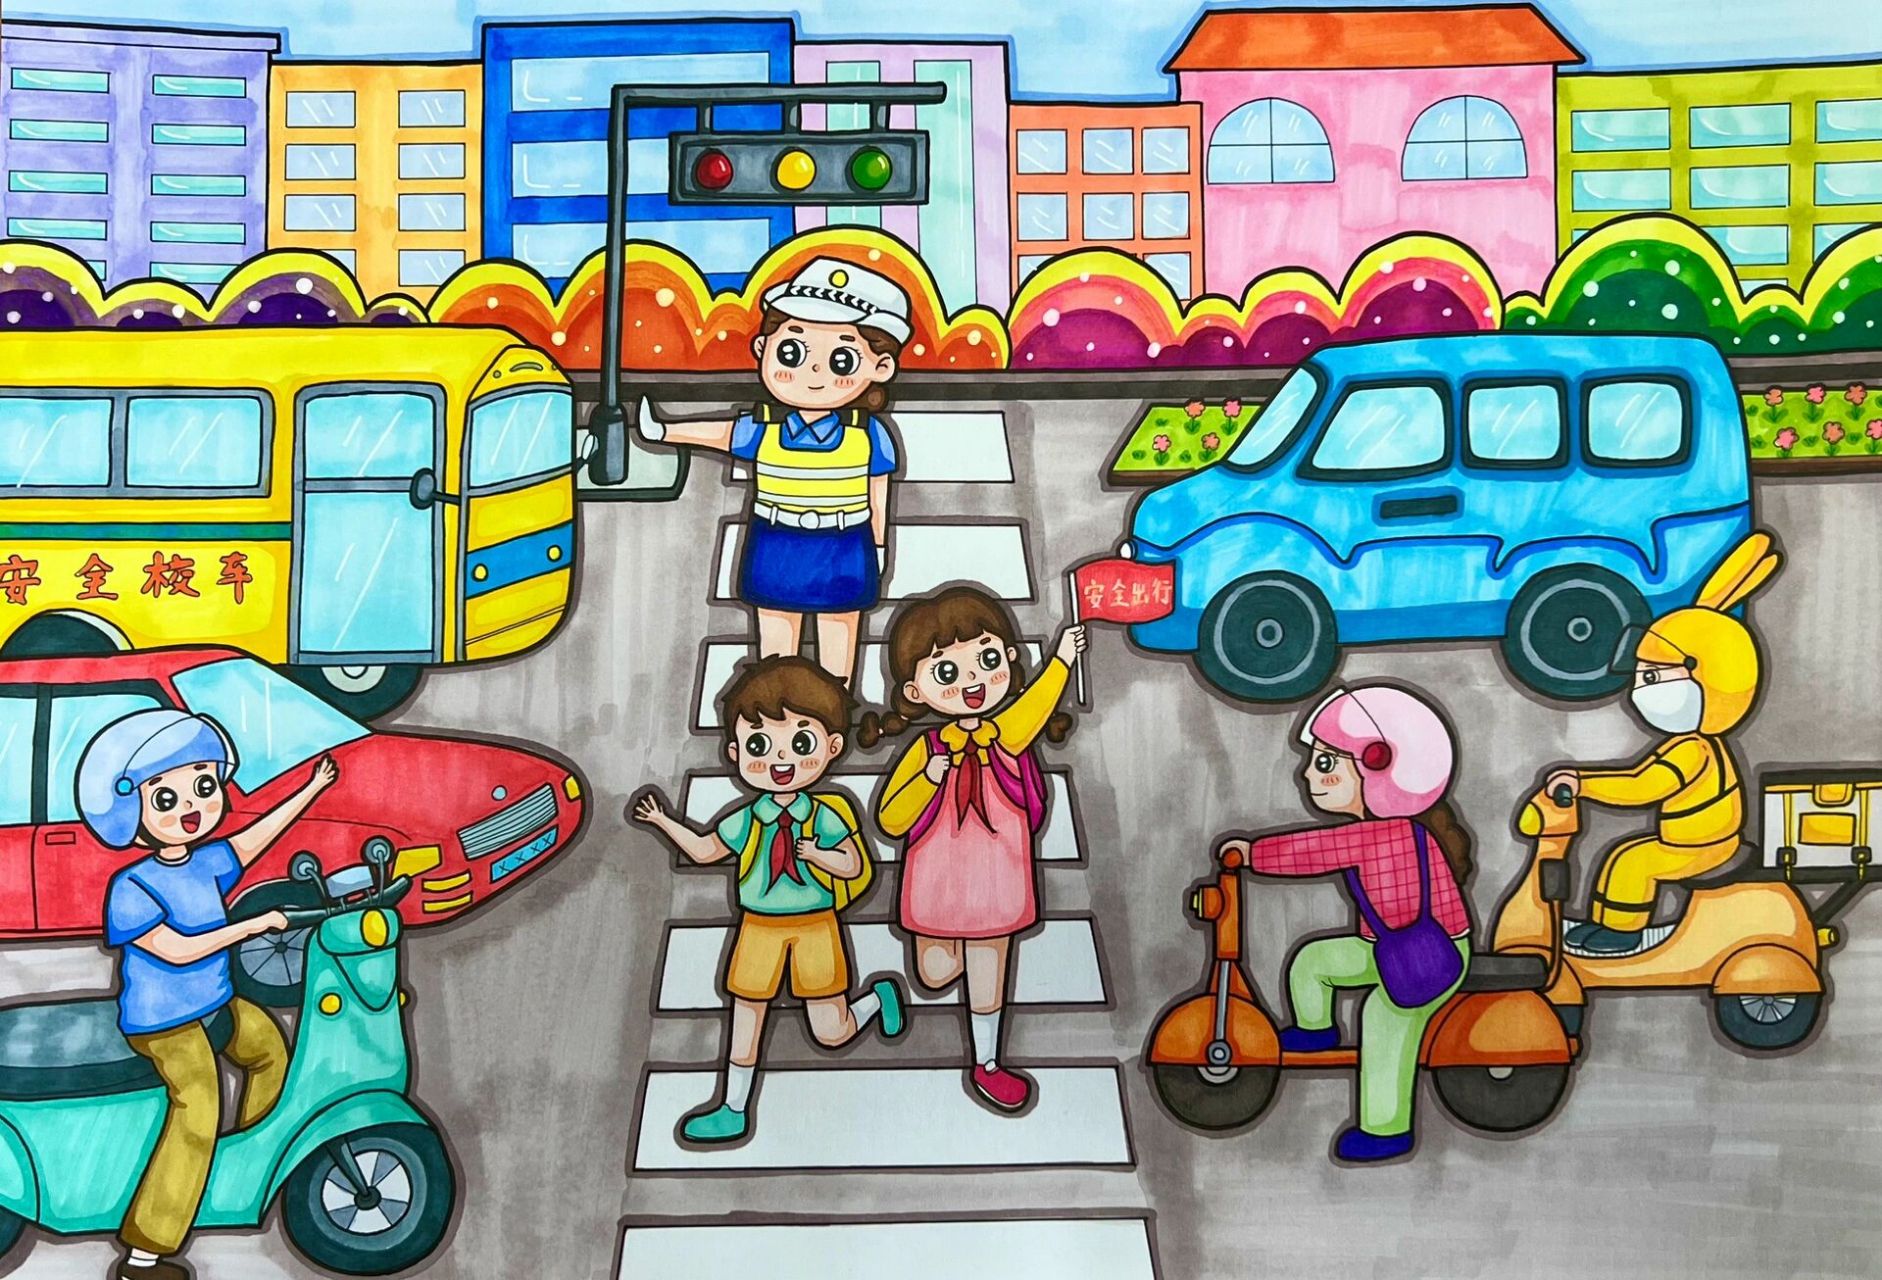 少年儿童交通安全绘画图片